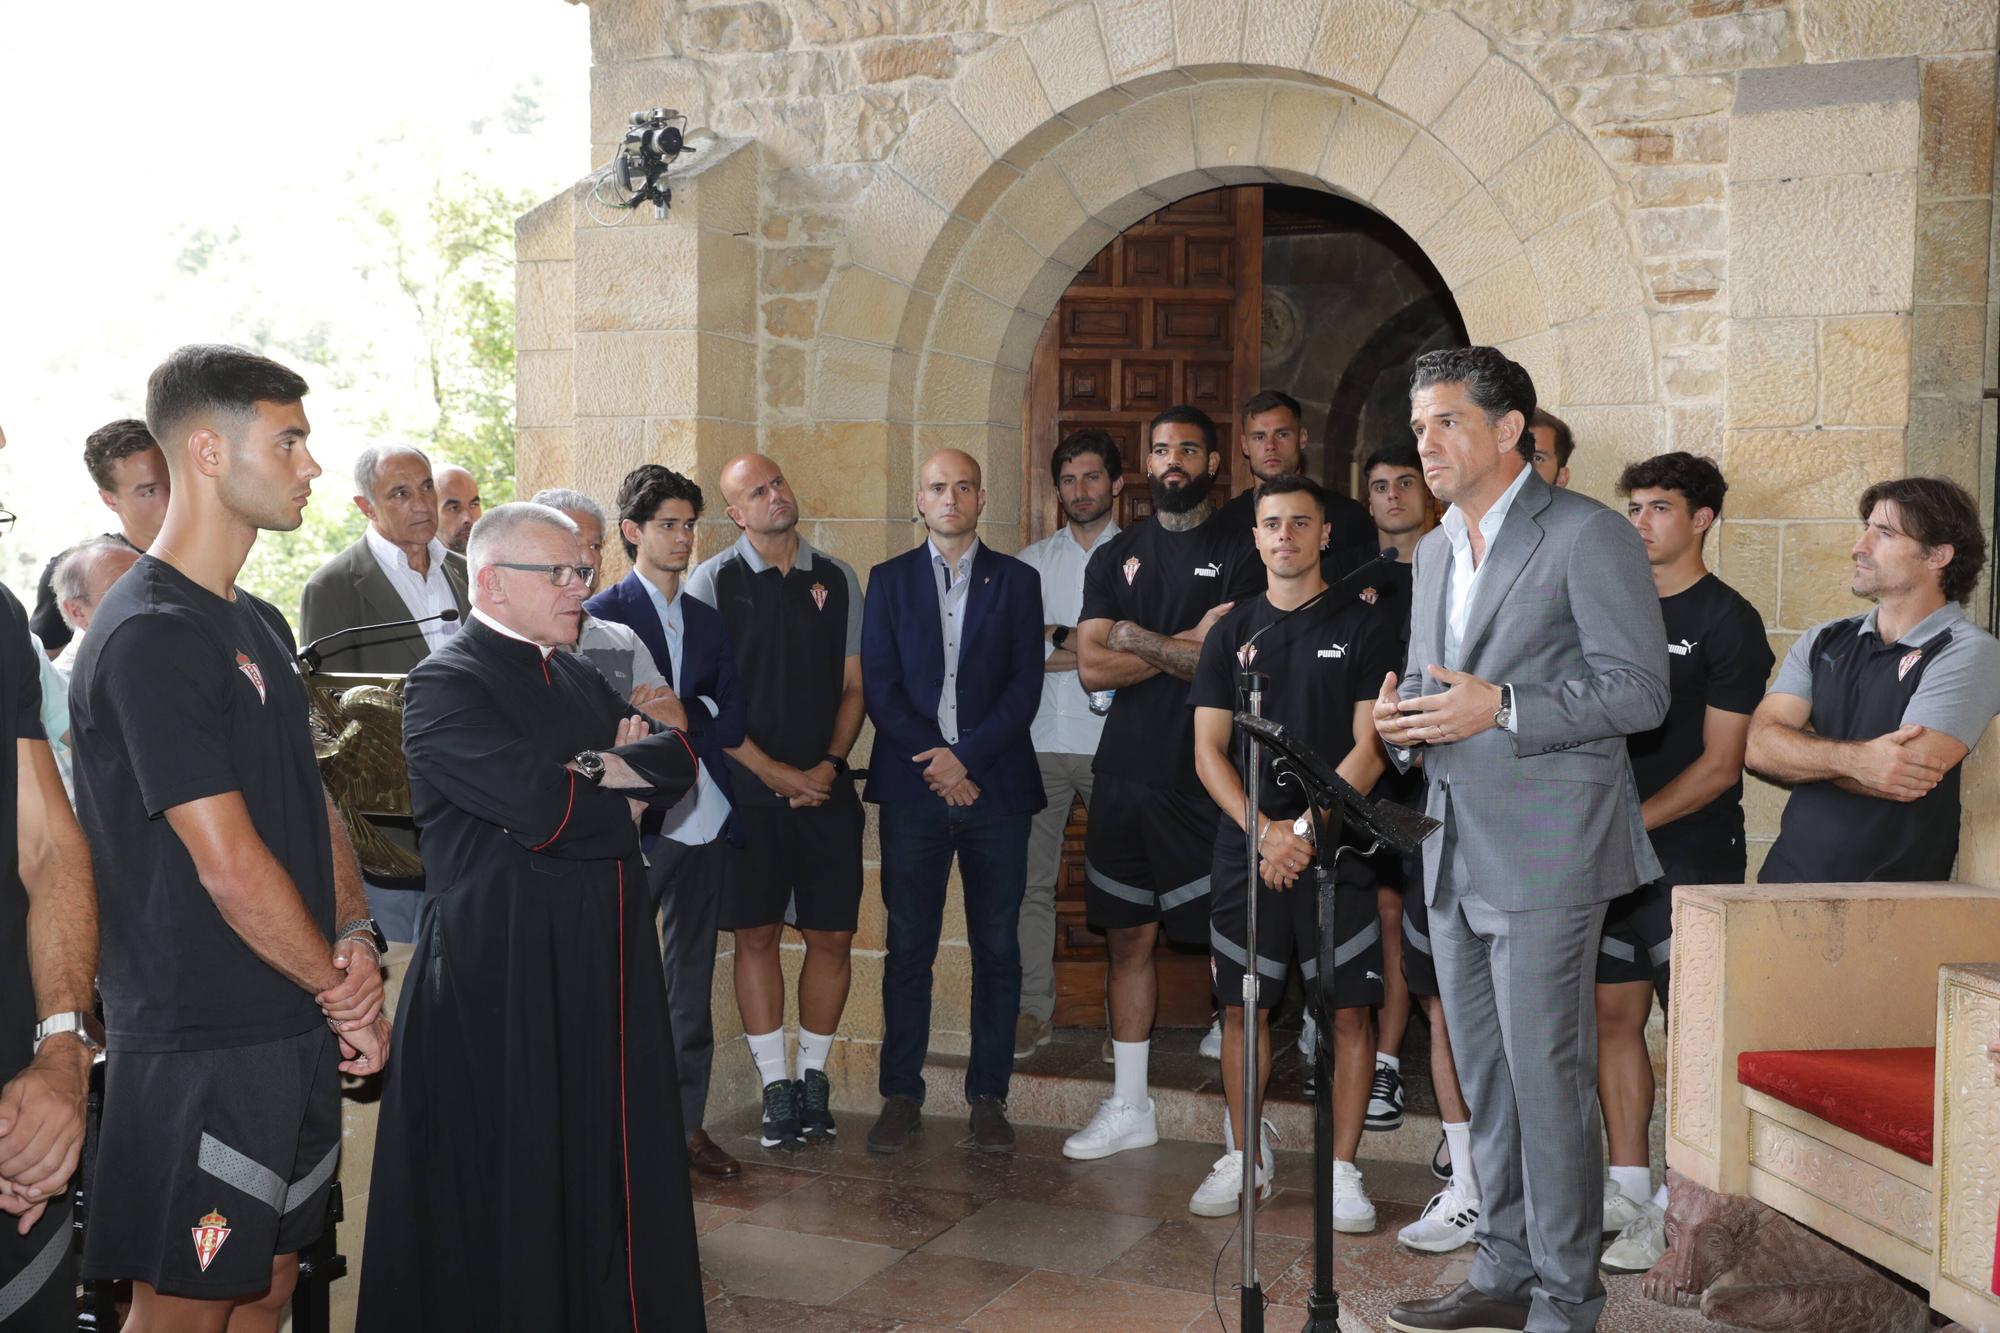 La visita de los jugadores del Sporting a la Santina, en imágenes